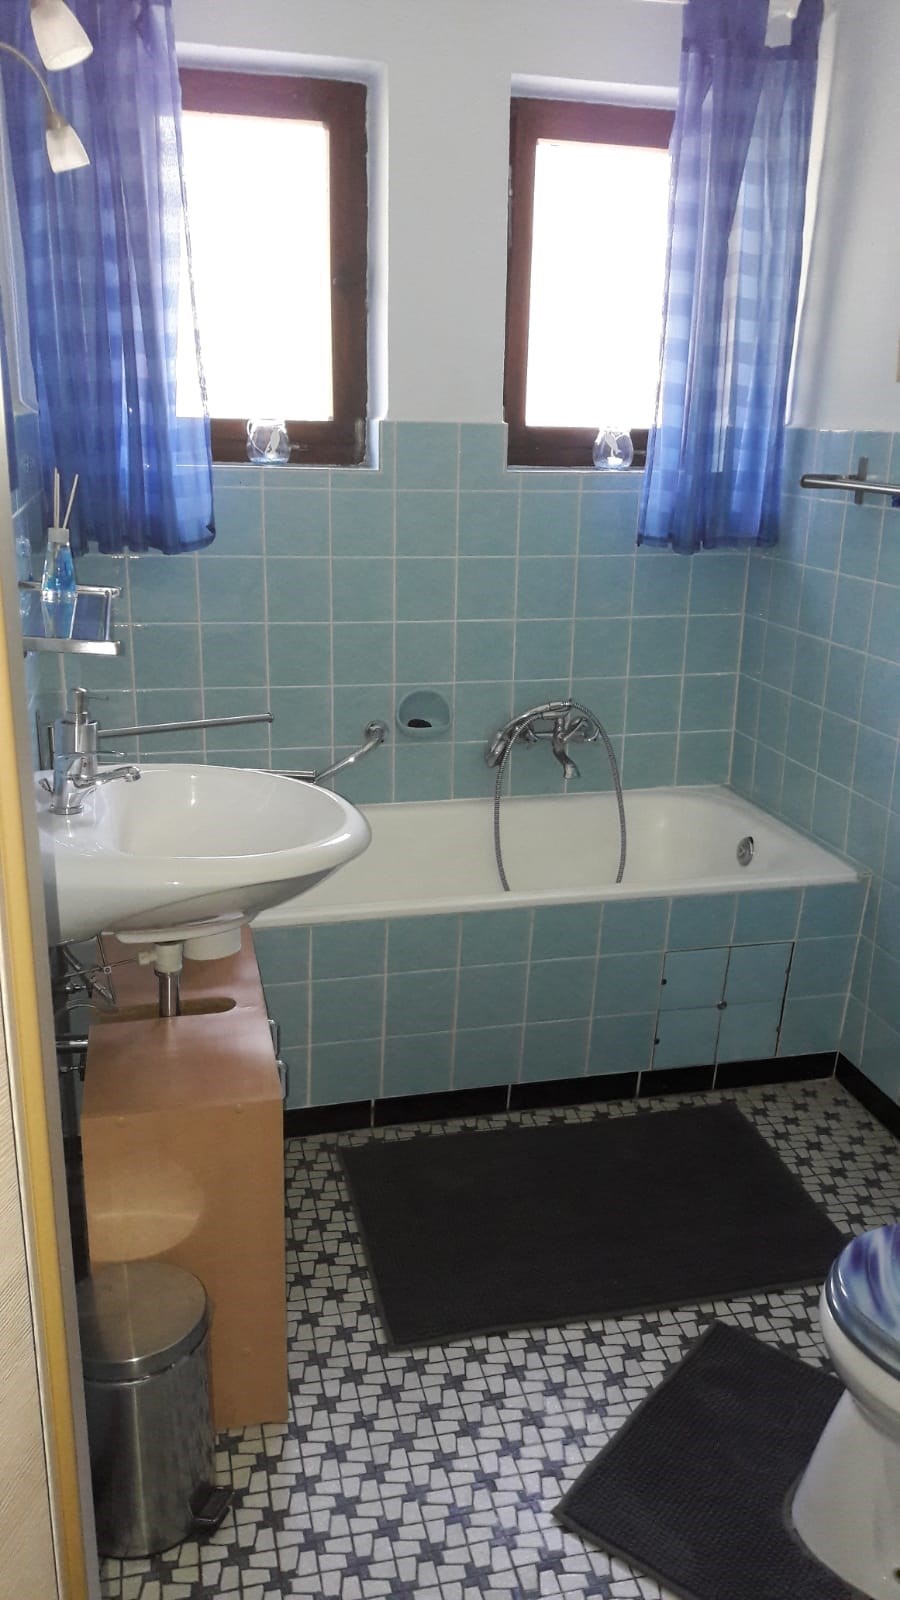 Urlaub-mit-Hund: Bad 2 - Toilette und Waschbecken bei den Schlafzimmern - Ferienhaus Luna in Rhauderfehn